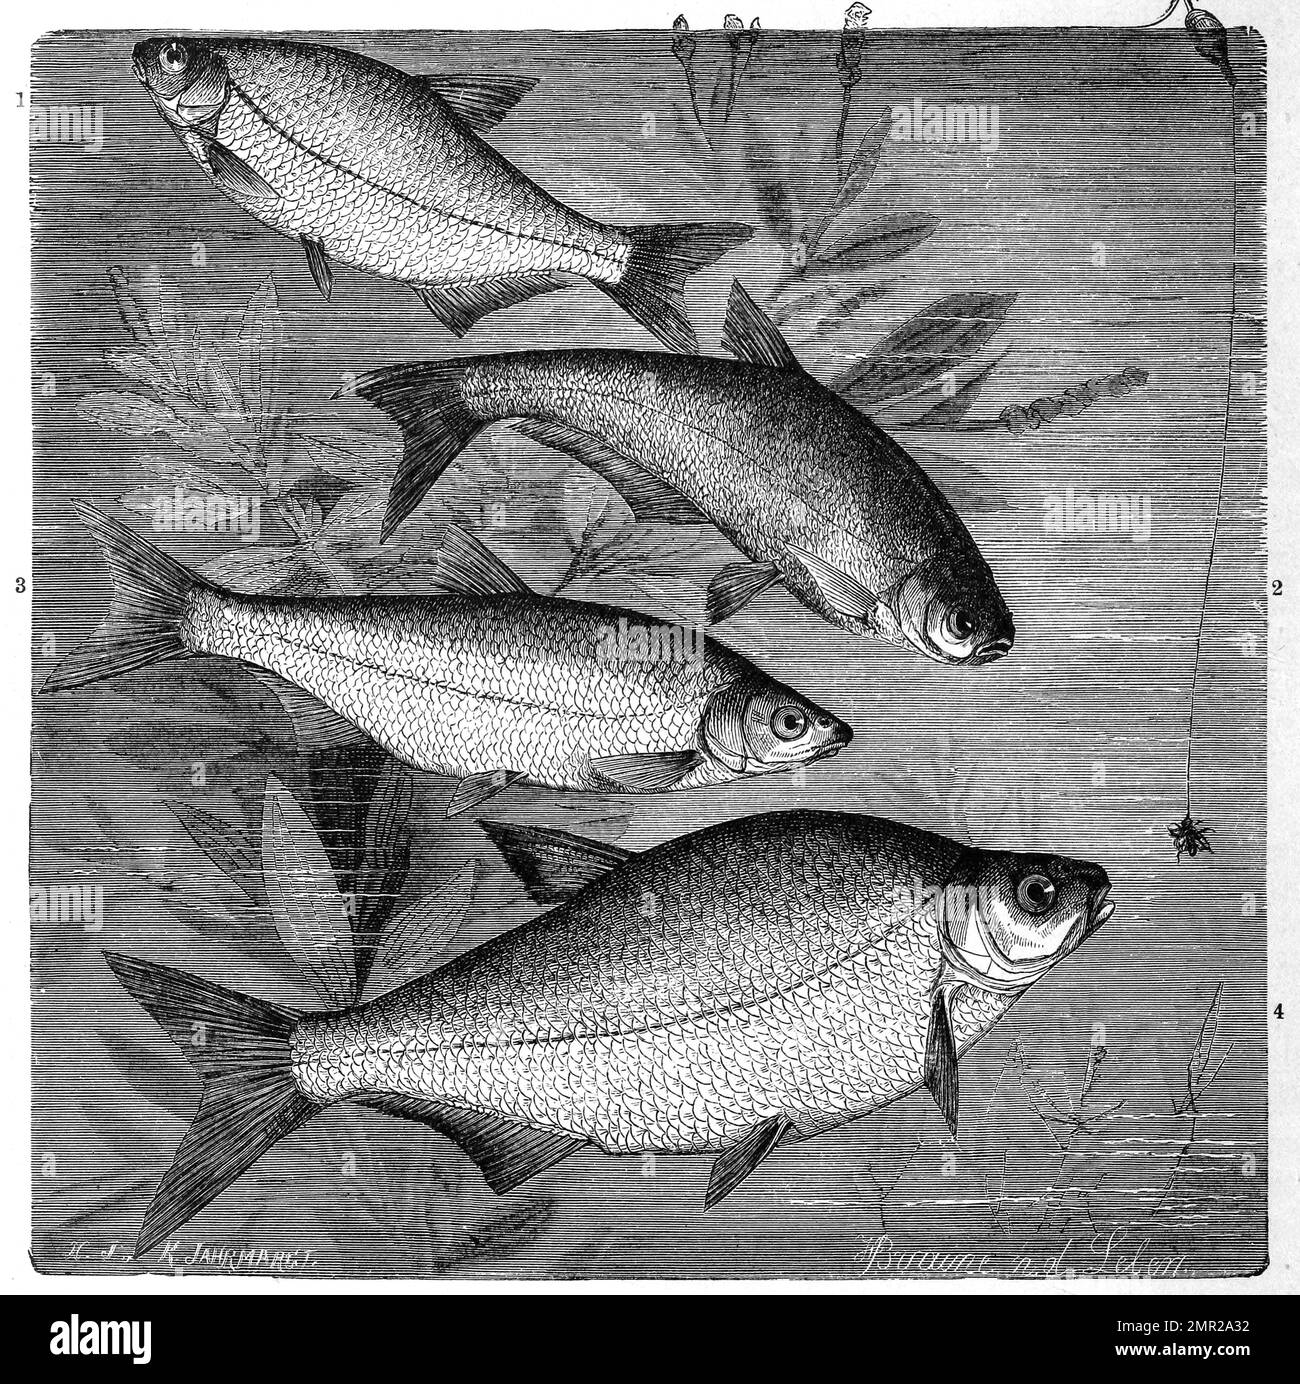 Fisch, 1. Güster, Ach Blicke, Pliete oder Halbbrasse, Abramis blicca, 2. Zope oder Spitzpleinzen, Ballerus ballerus, Abramis ballerus, 3. Zährte, Vimba vimba, auch Rußnase genannt, ein autochthoner Schwarmfisch, 4. Blei, Brasse, Abramis brama, Historisch, digital restaurierte Reproduktion von einer Vorlage aus dem 19. Jahrhundert Banque D'Images